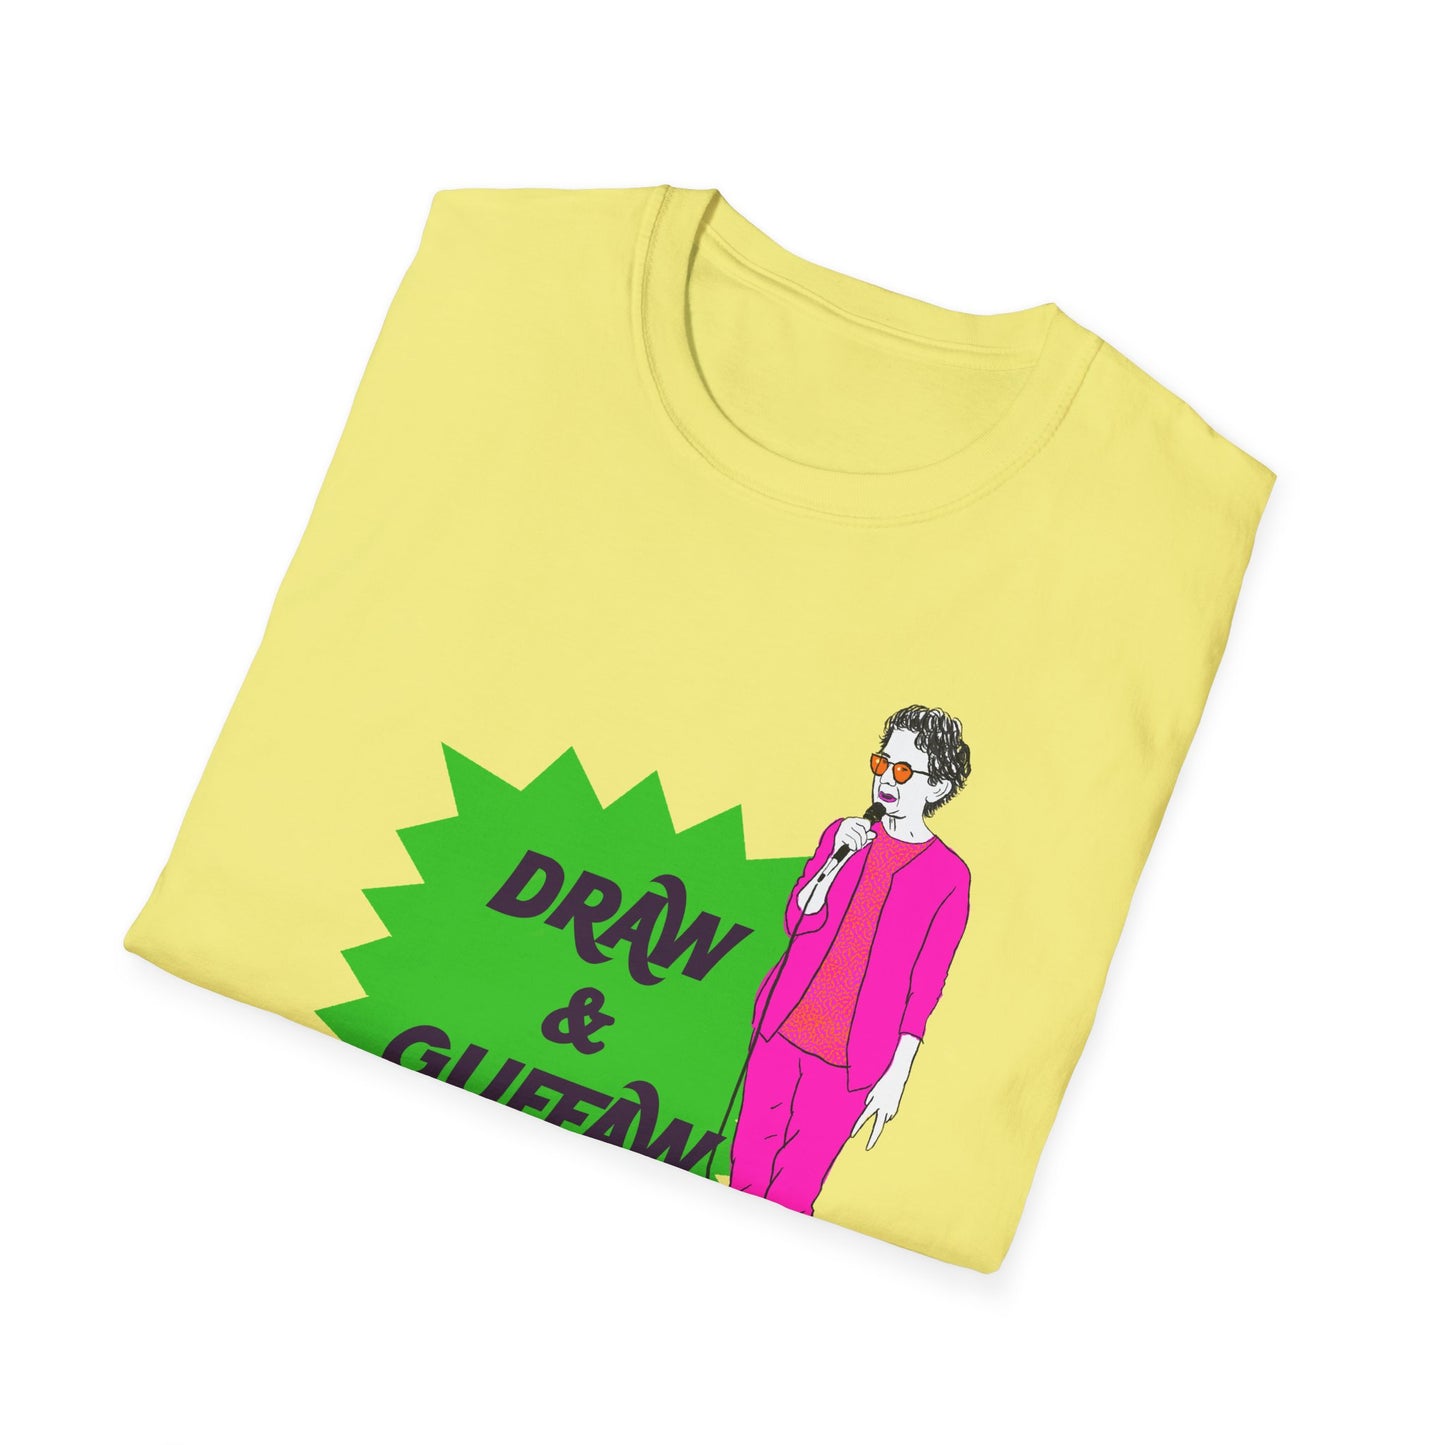 Draw and Guffaw Unisex Softstyle T-Shirt